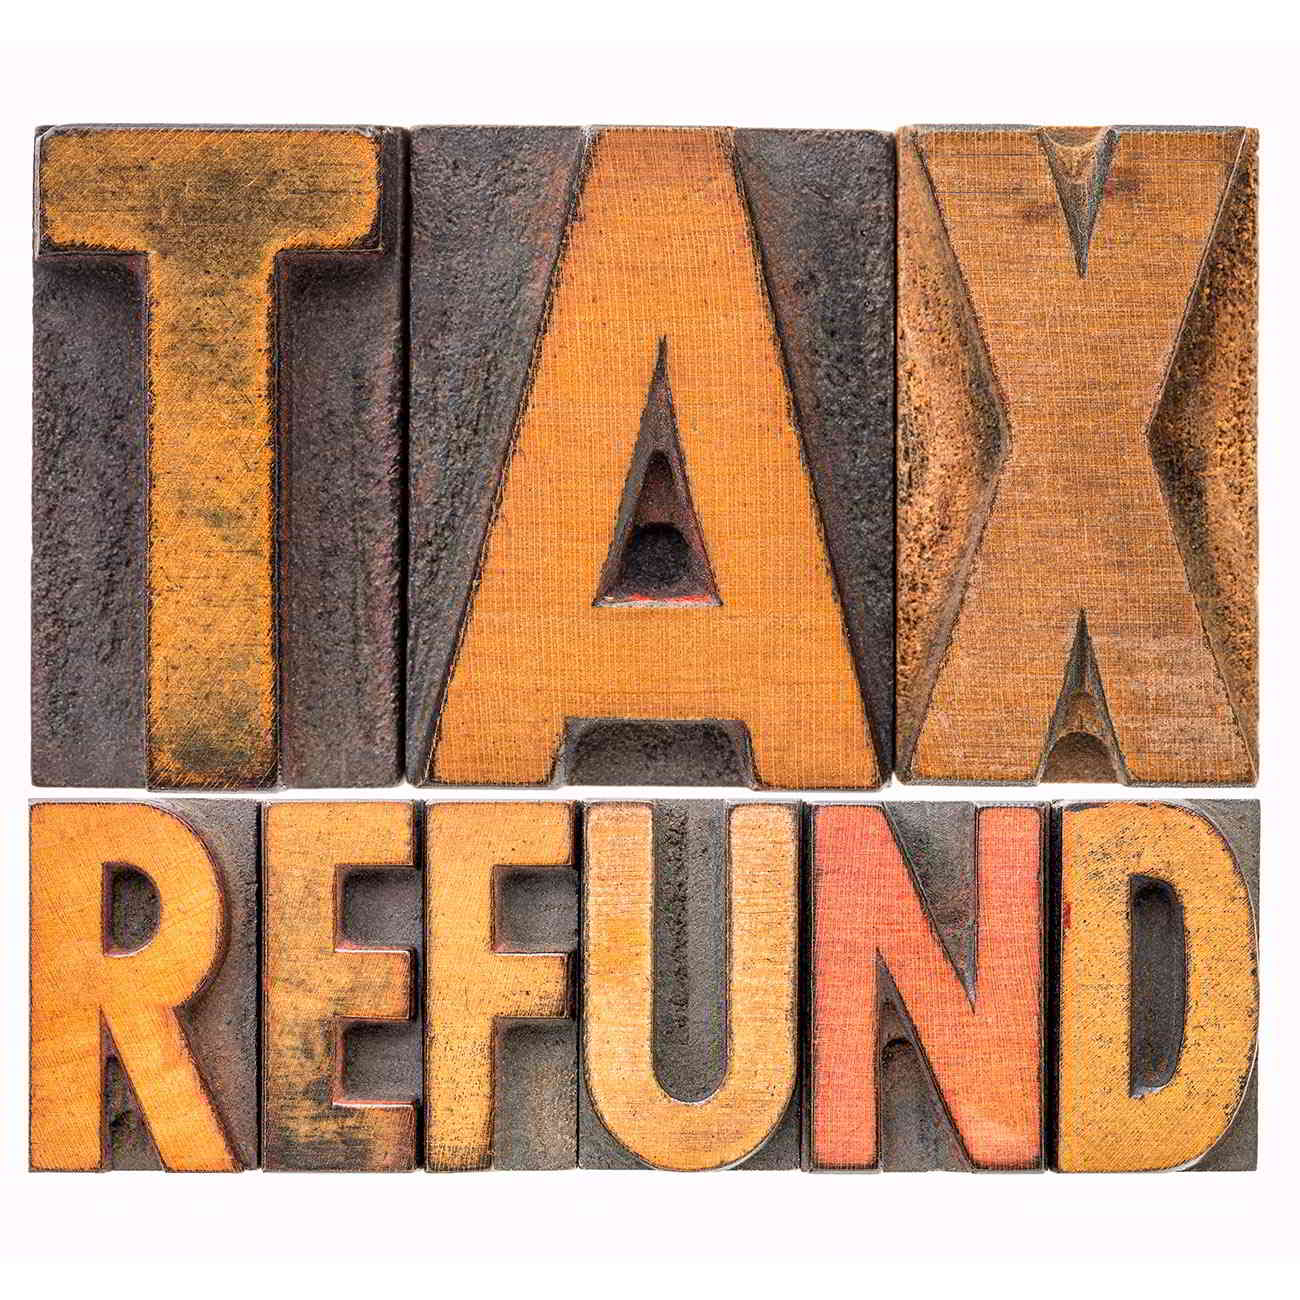 tax refund